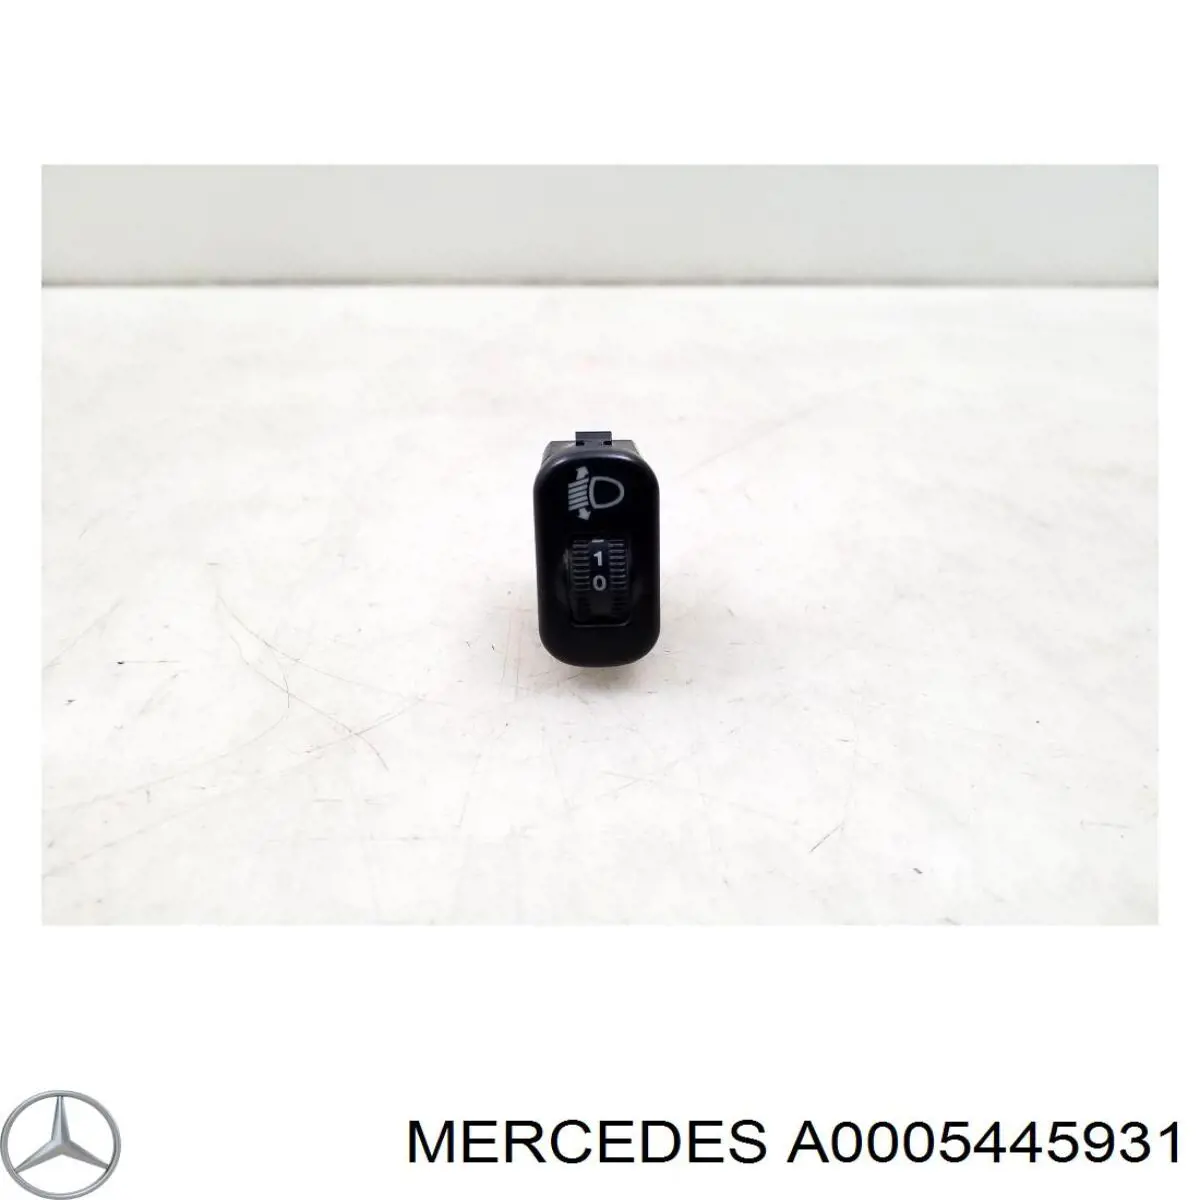 A0005445931 Mercedes botón de elemento de regulación, regulación del alcance de faros